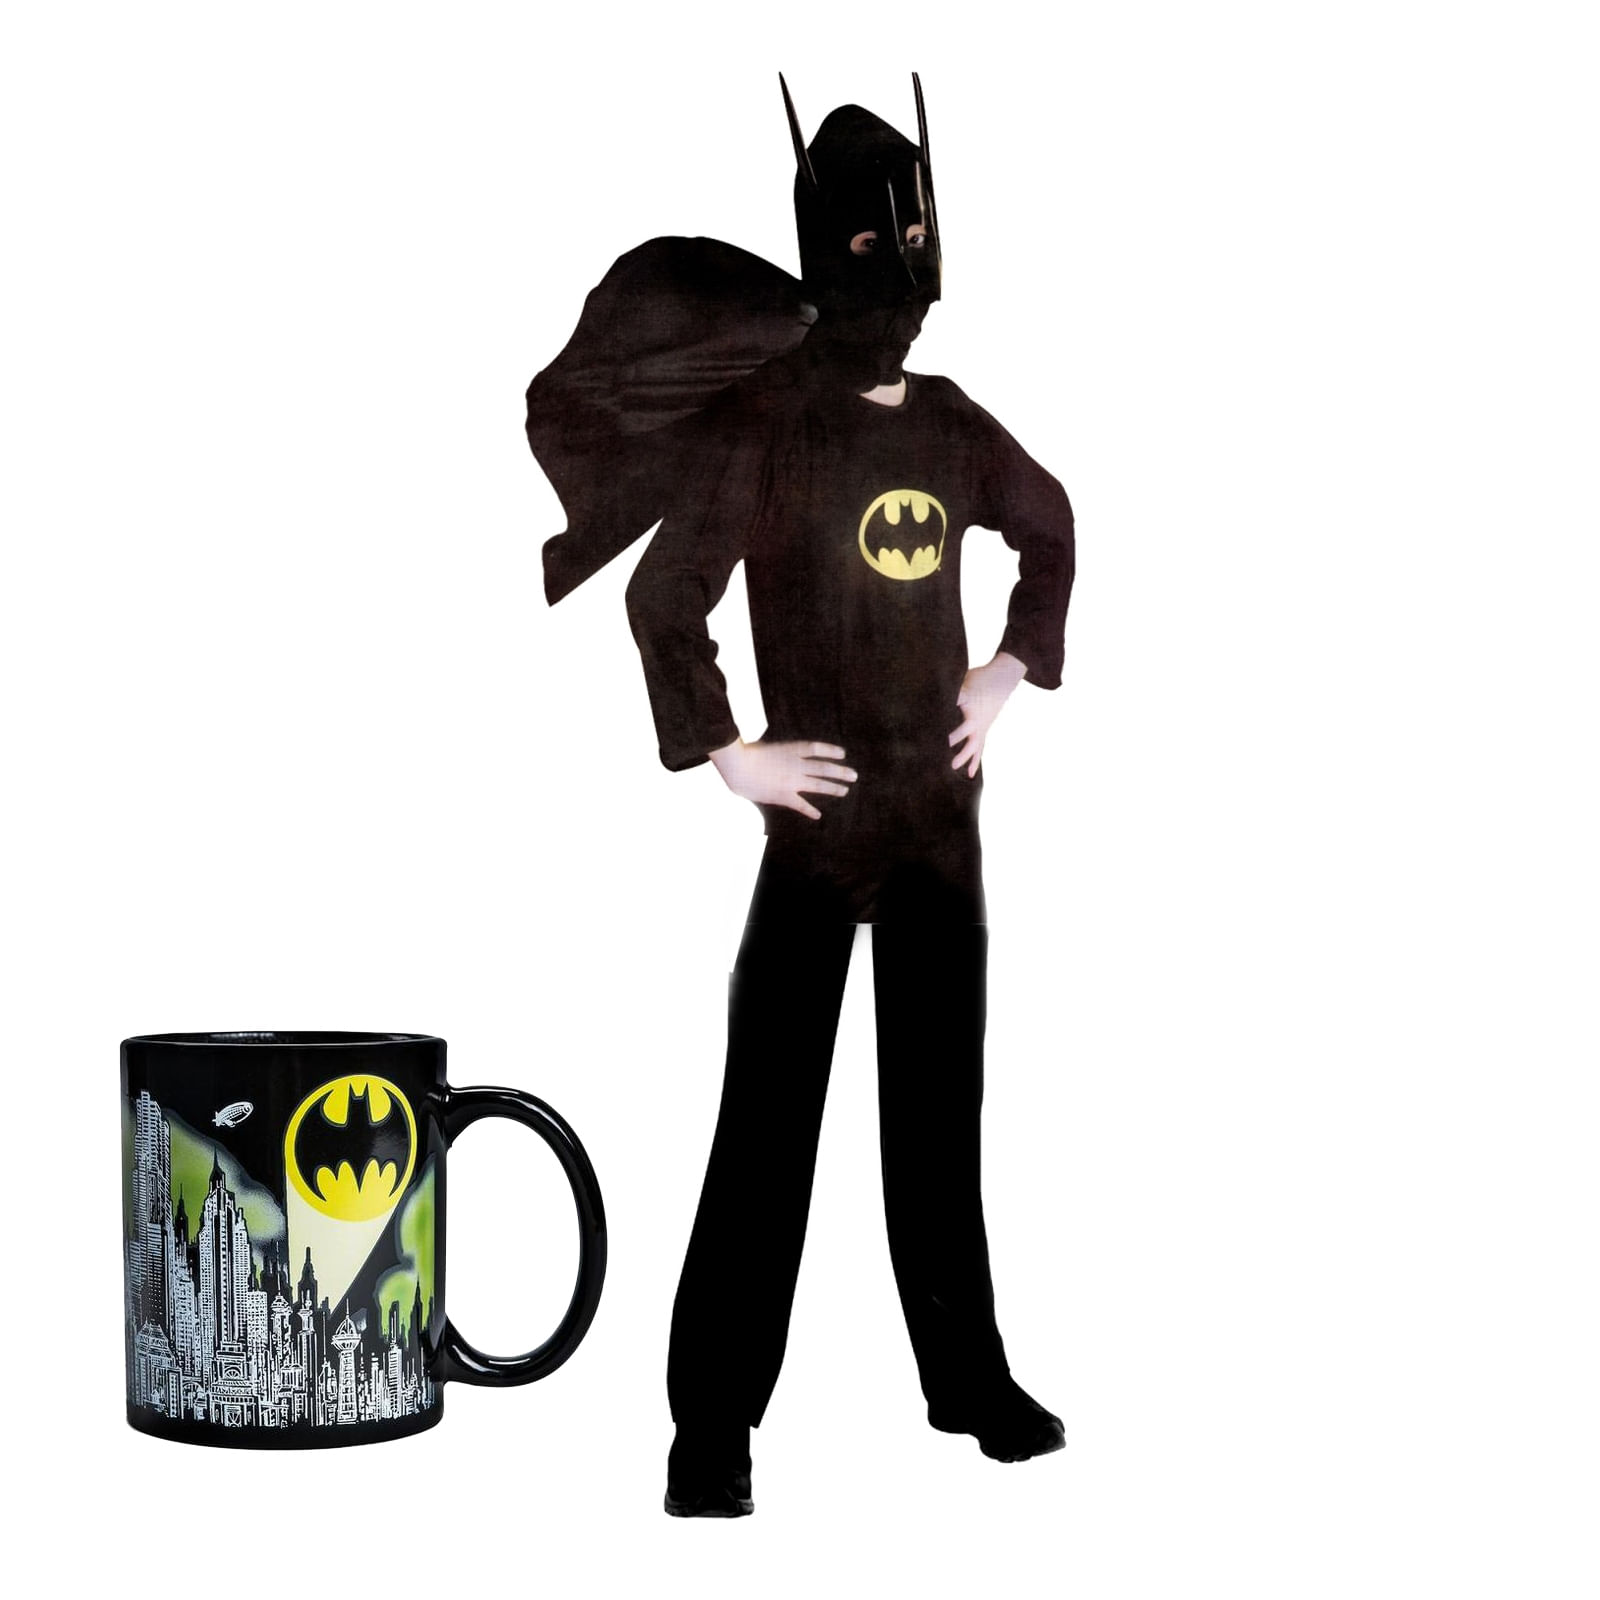 Set costum clasic Batman IdeallStore®, 7-9 ani, 120-130 cm, negru si cana personalizata